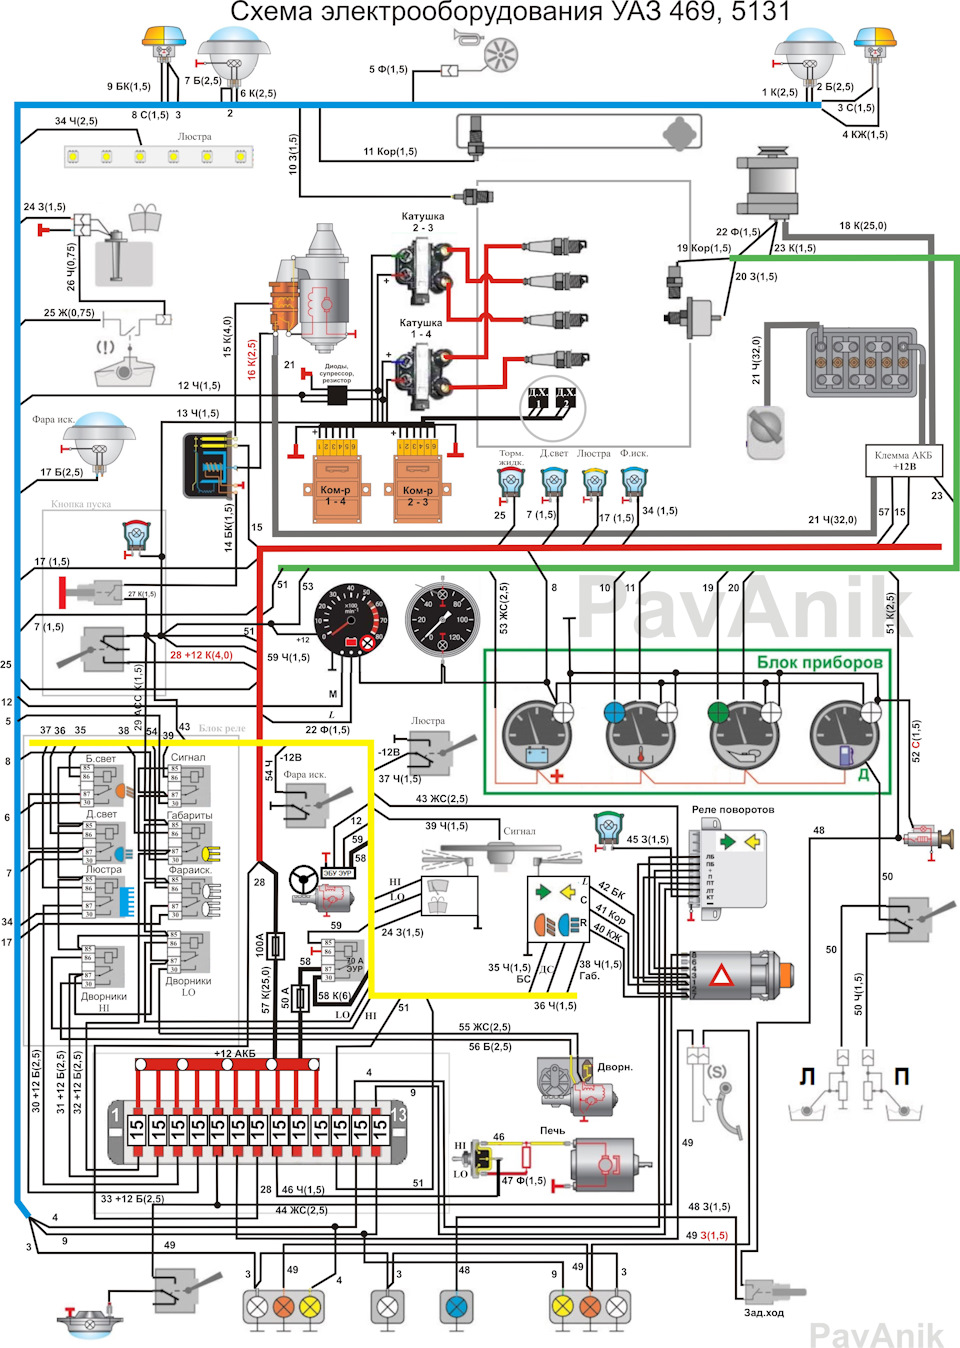 Схема подключения приборов на уаз 390994. начинающему автоэлектрику для справки: схема электропроводки уаз